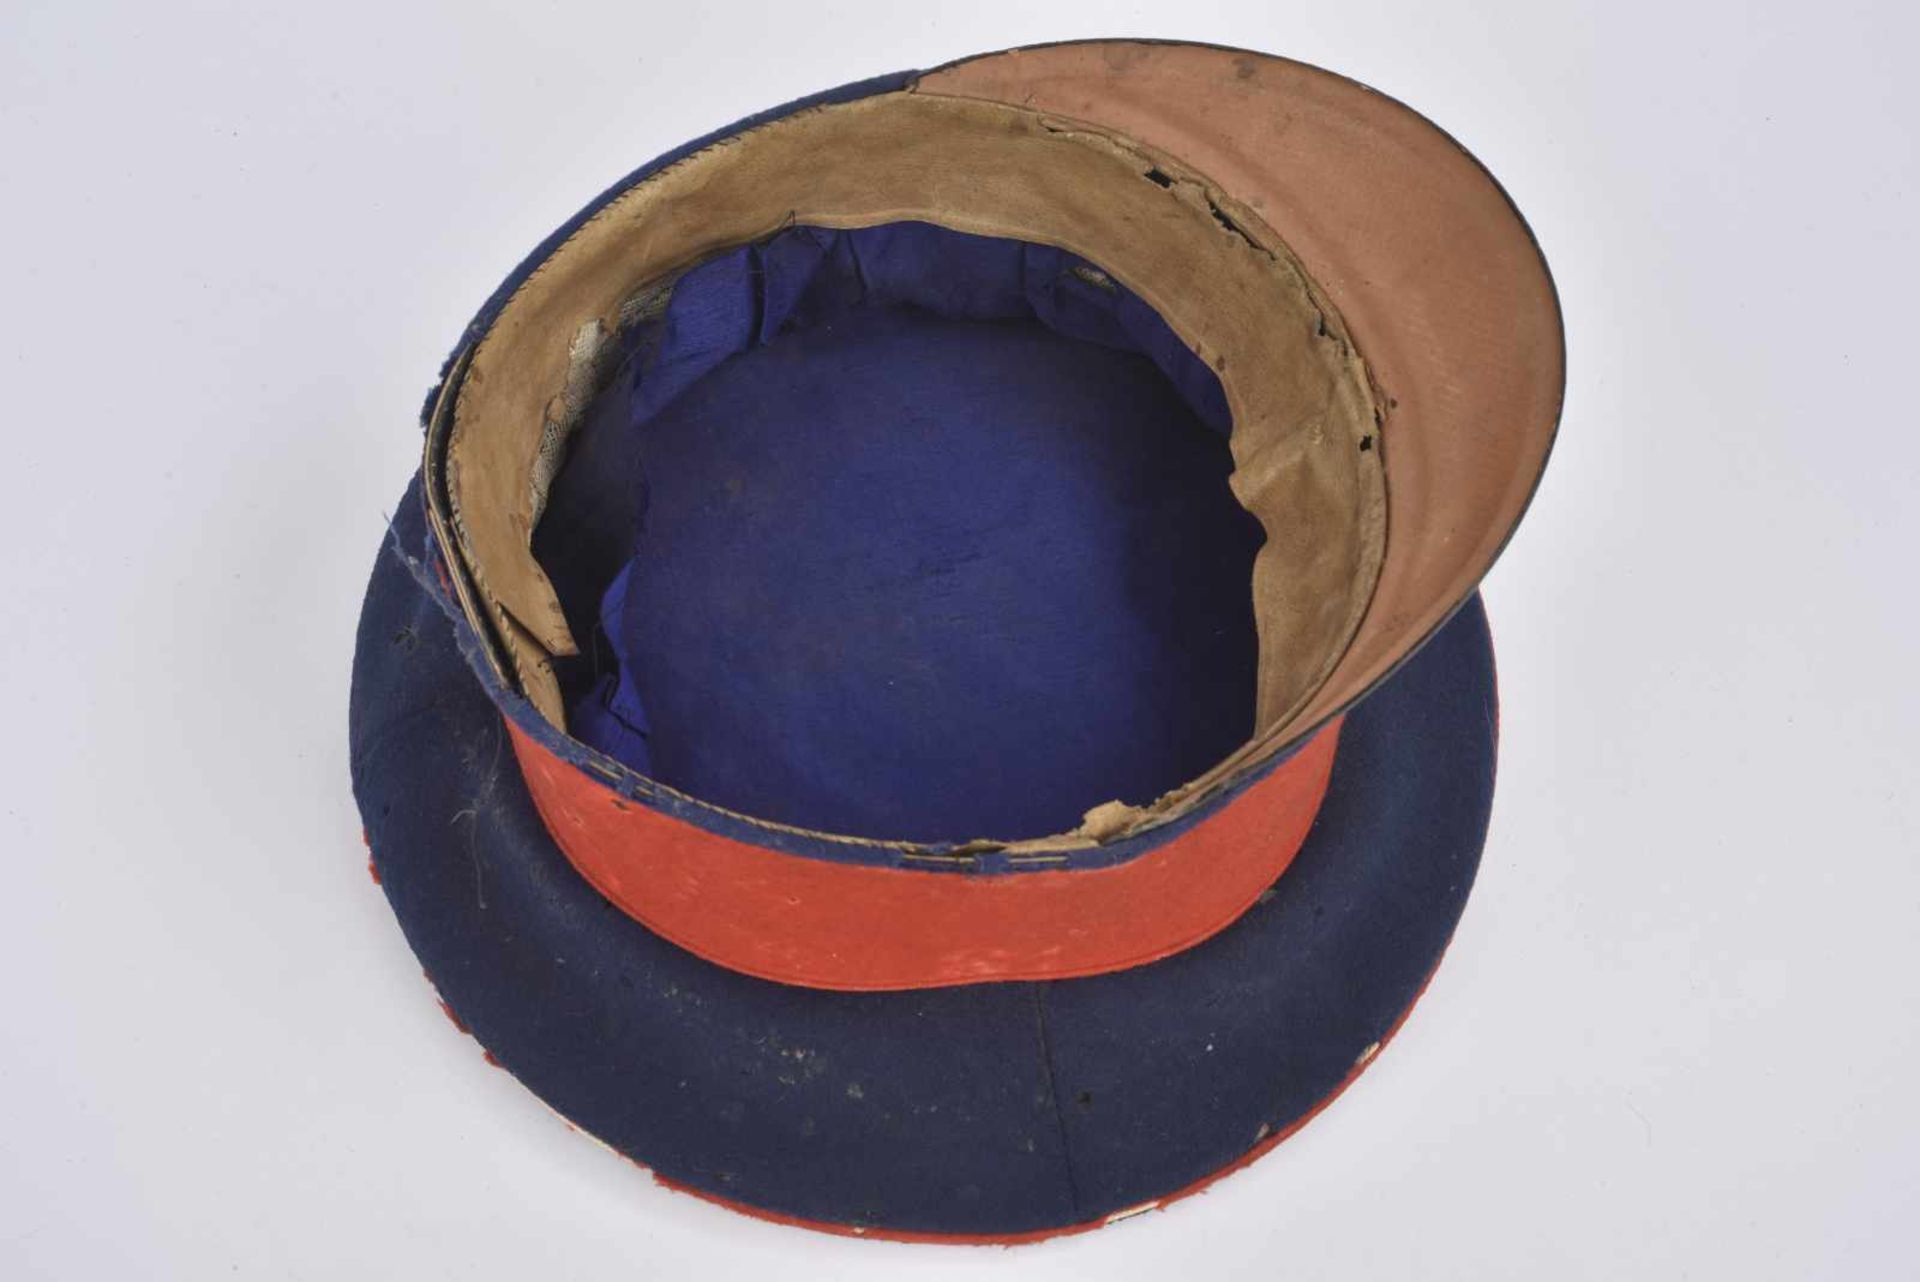 Casquette Schirmmütze de sous-officier bavarois Bandeau rouge, coiffe bleue, liseré rouge, trous - Bild 3 aus 4